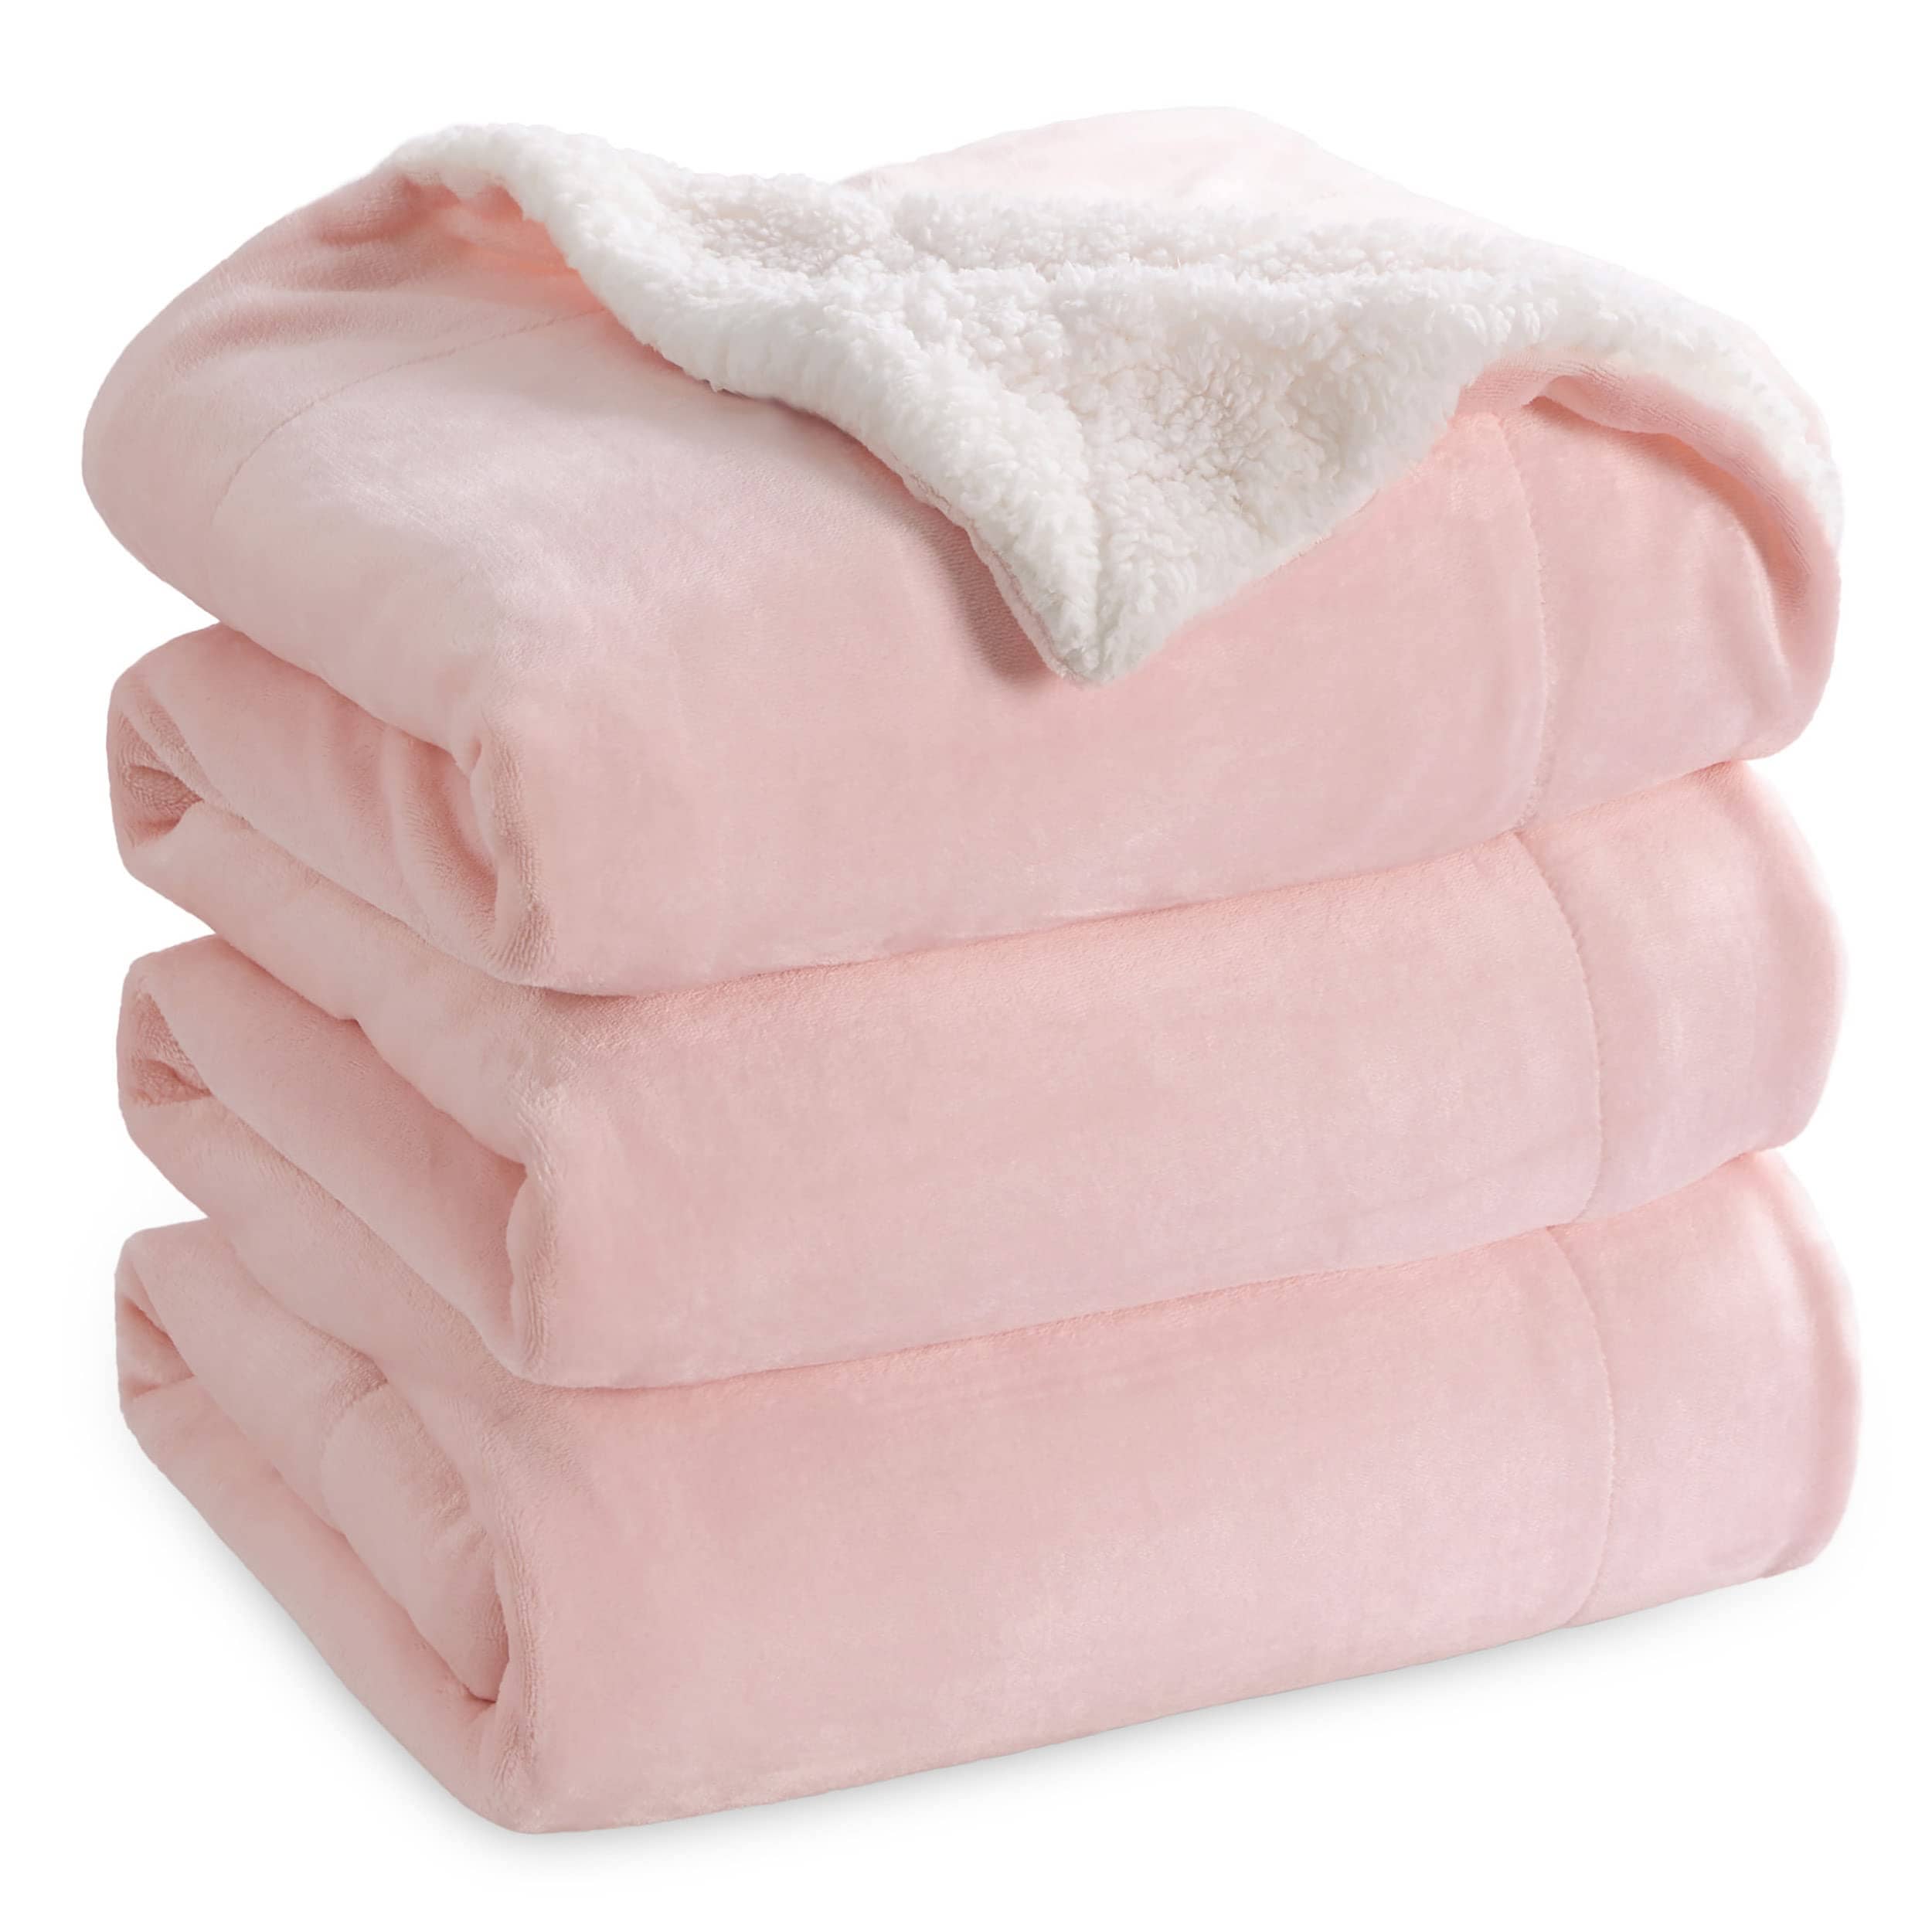 Bedsure Sherpa and Fleece Reversable Blanket